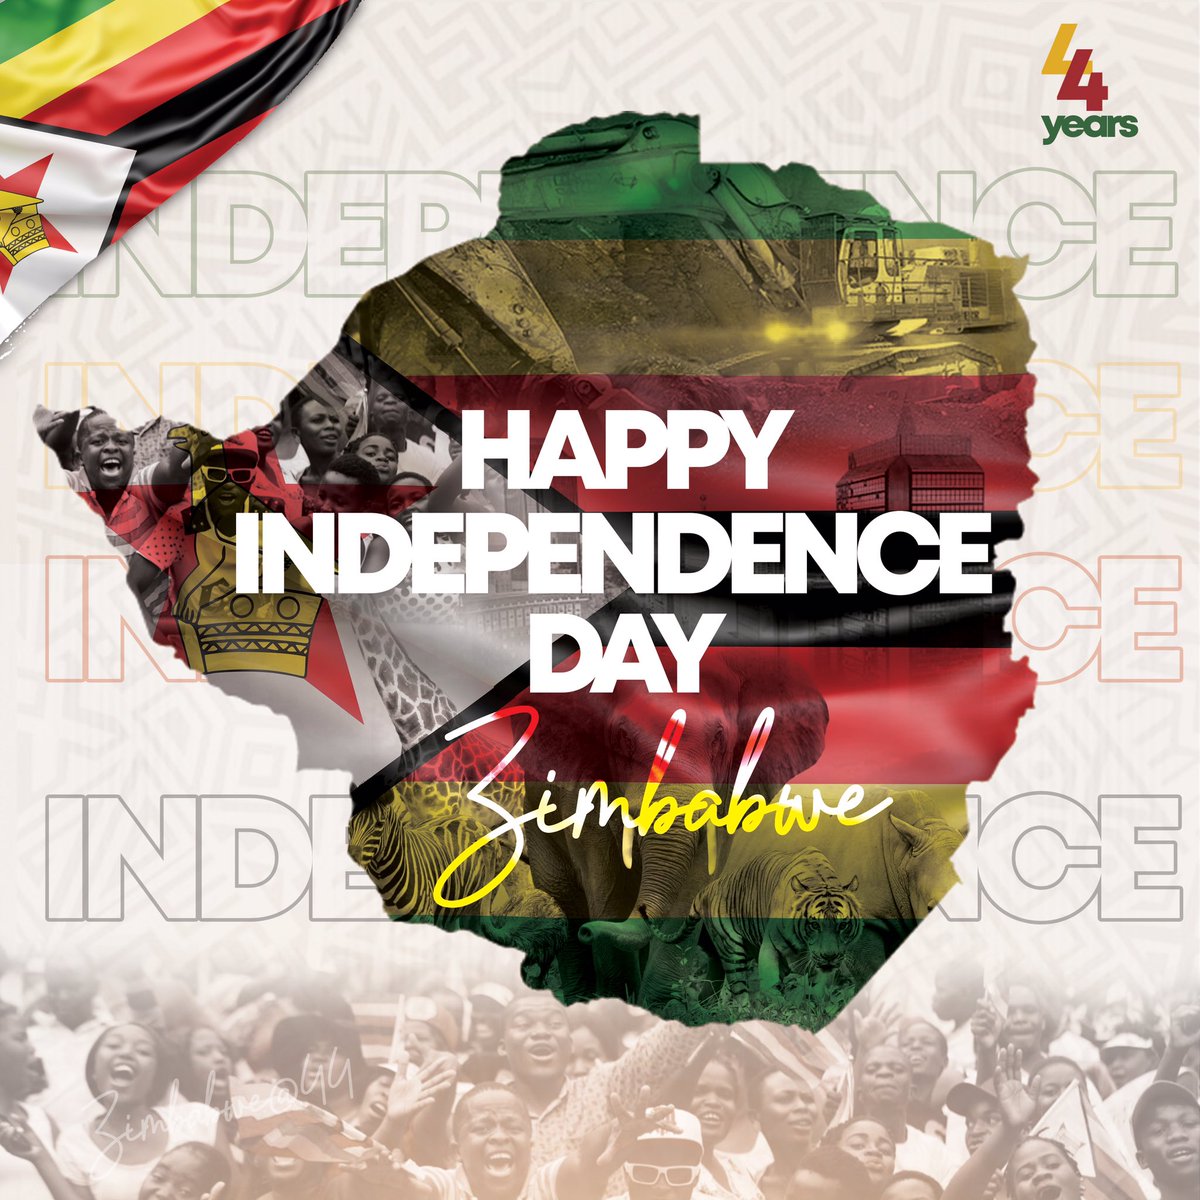 Happy Independence Day Zimbabwe. Zim@44. God bless us and God bless Zimbabwe 🇿🇼🔥

#ZimbabweIndependenceDay #zimbabwe #Zim44 #zimcelebs #designer #design #creative #Photoshop #ZimDay #zim🇿🇼